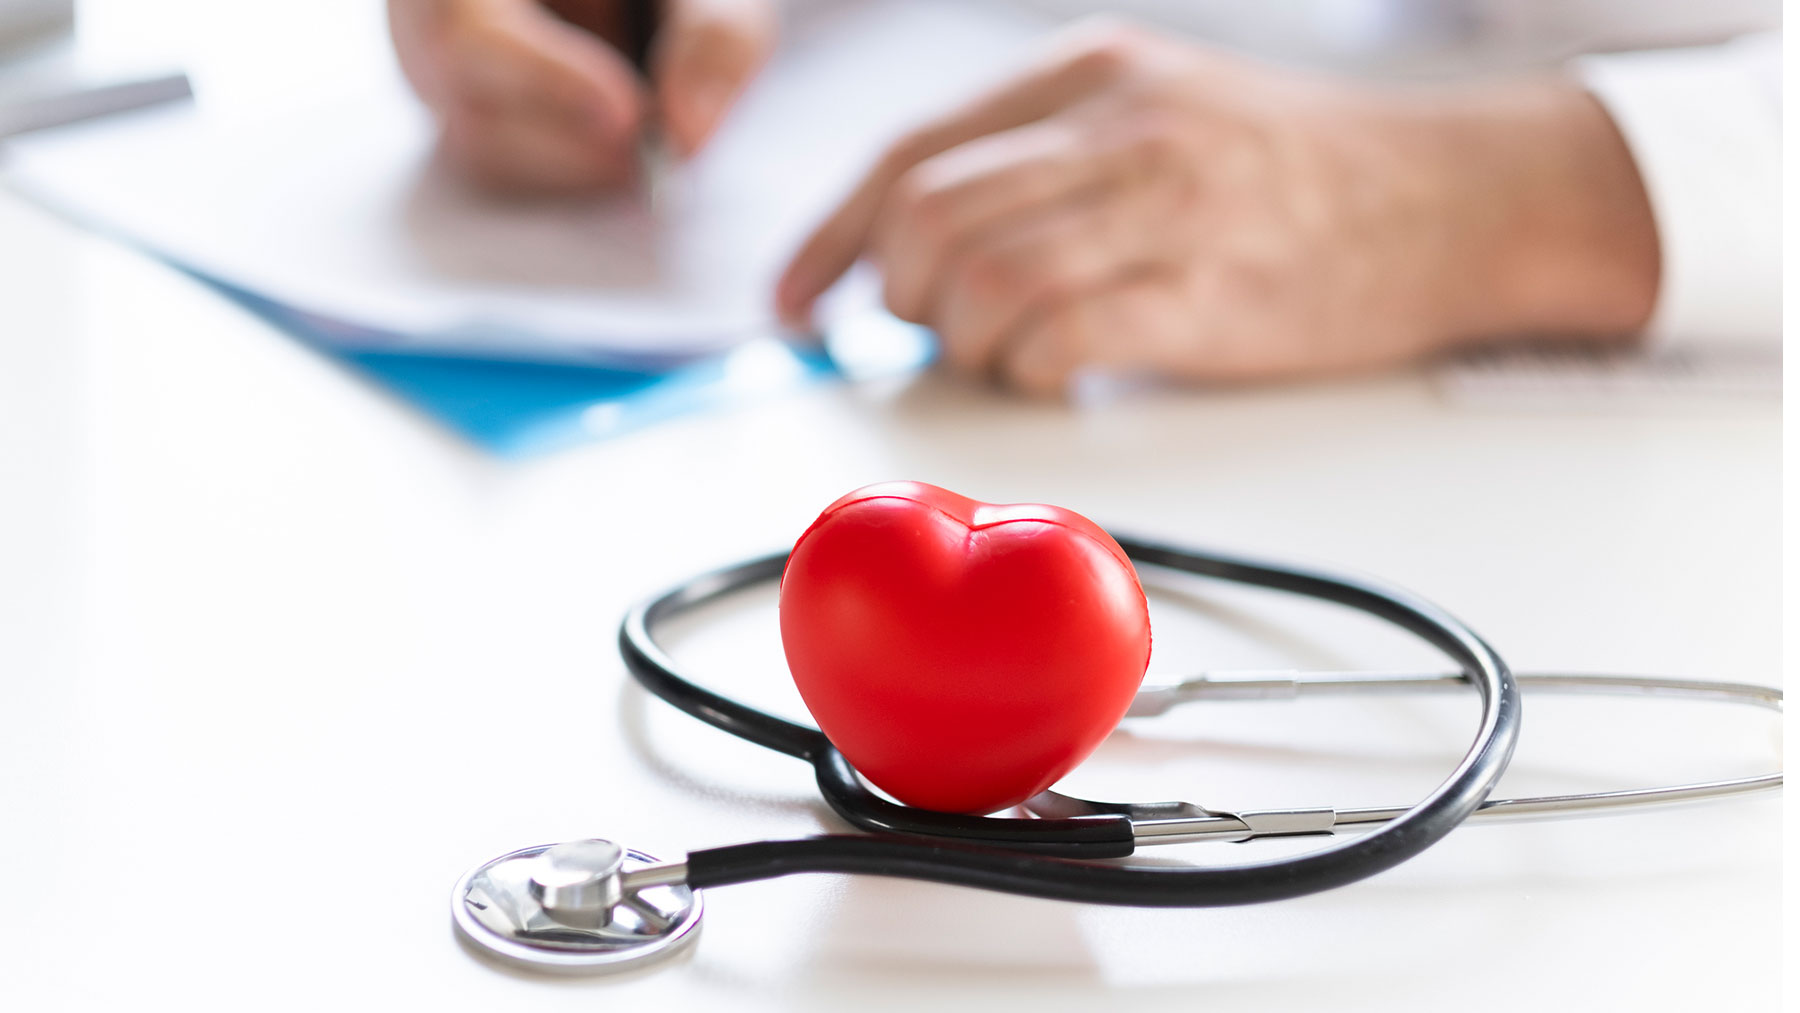 En el estudio se incluyeron 600 pacientes con cardiopatías coronarias y otros 150 sin ellas.